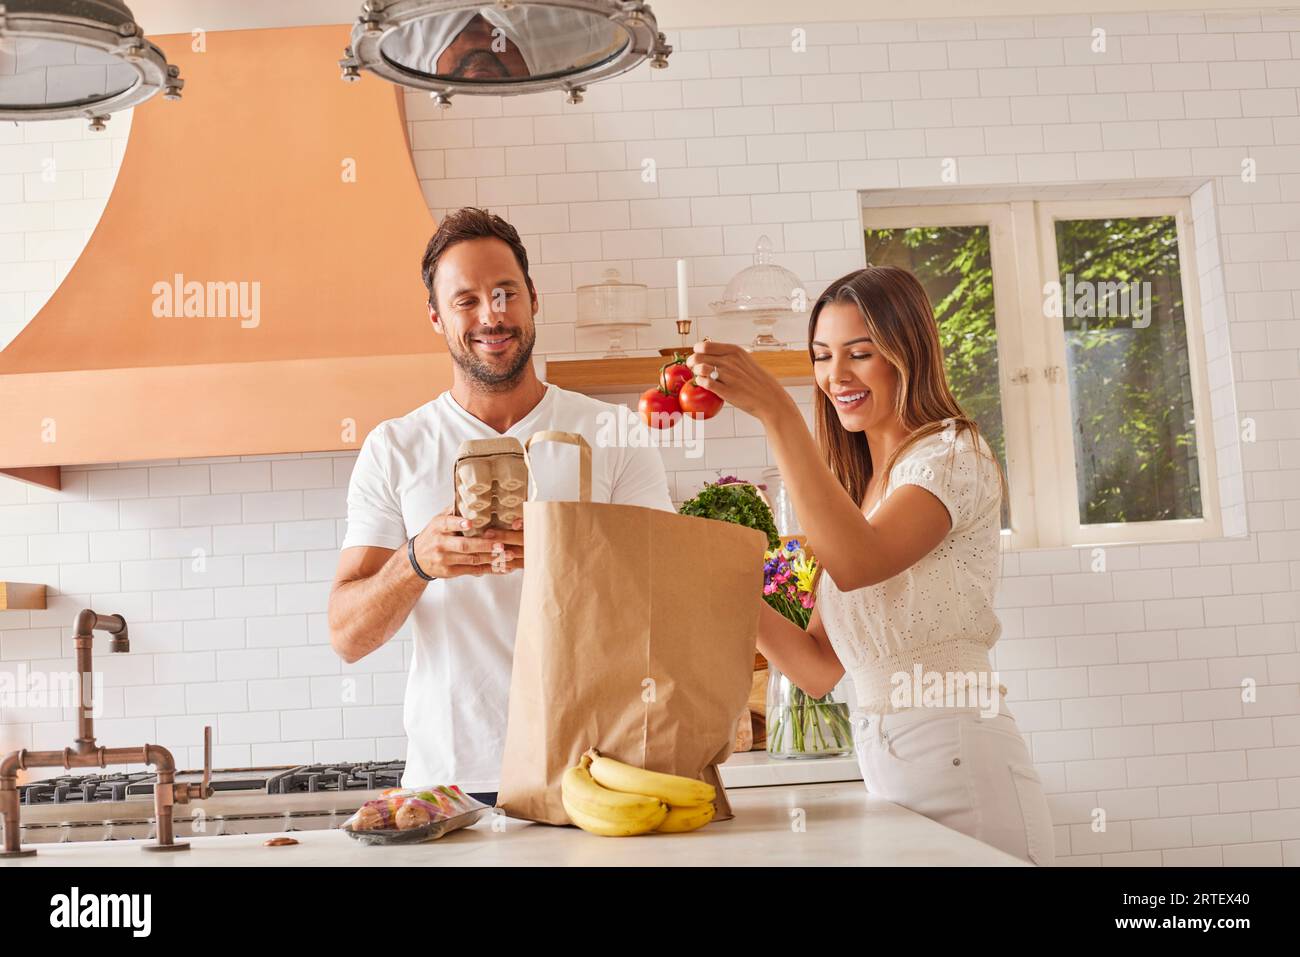 Coppia sorridente con sacchetto di carta e alimentari in cucina Foto Stock